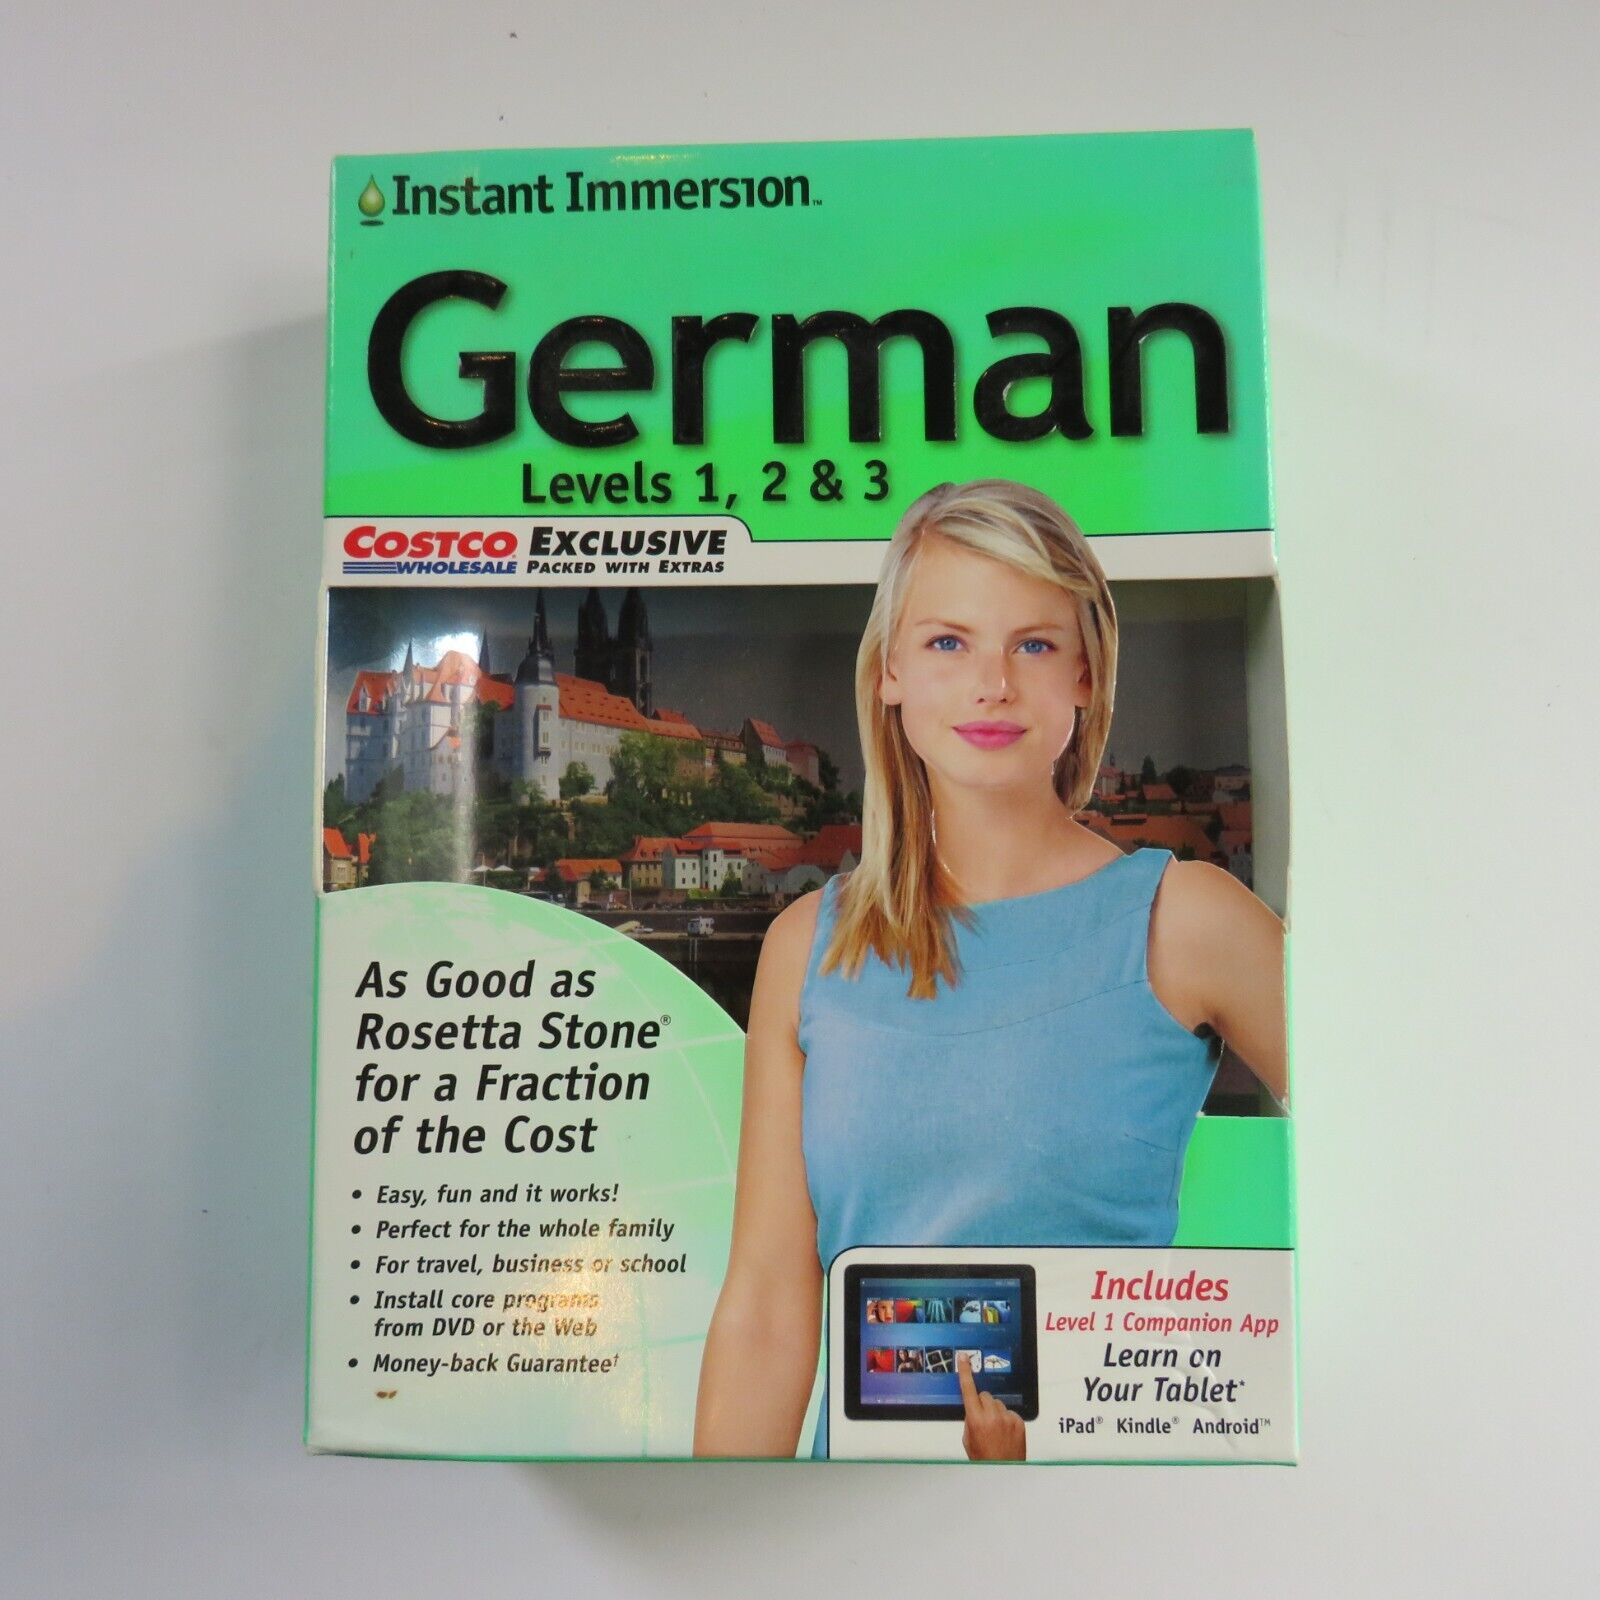 Instant Immersion German Levels 1, 2 & 3 DVD Set